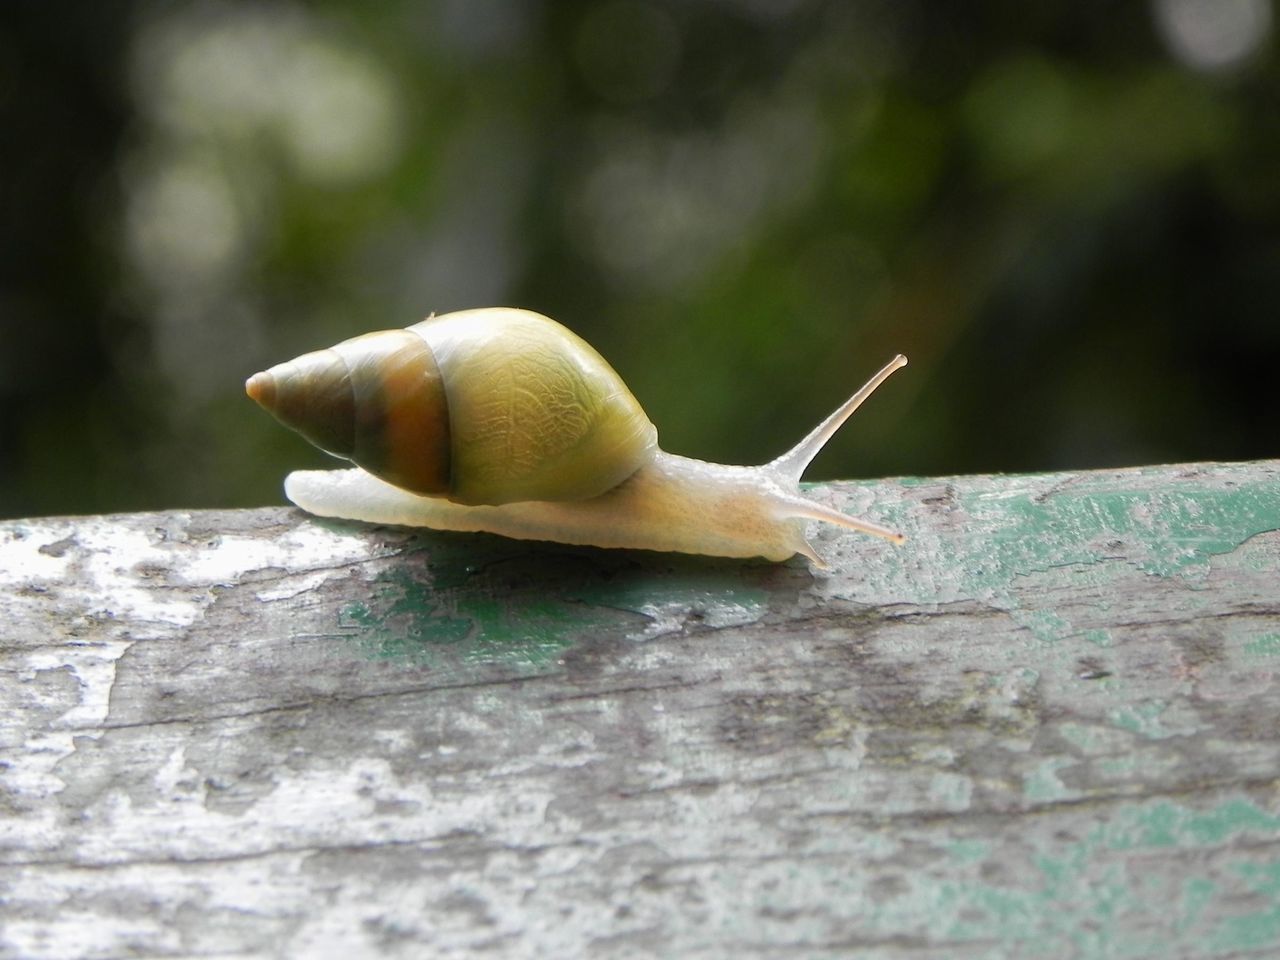 Little green snail